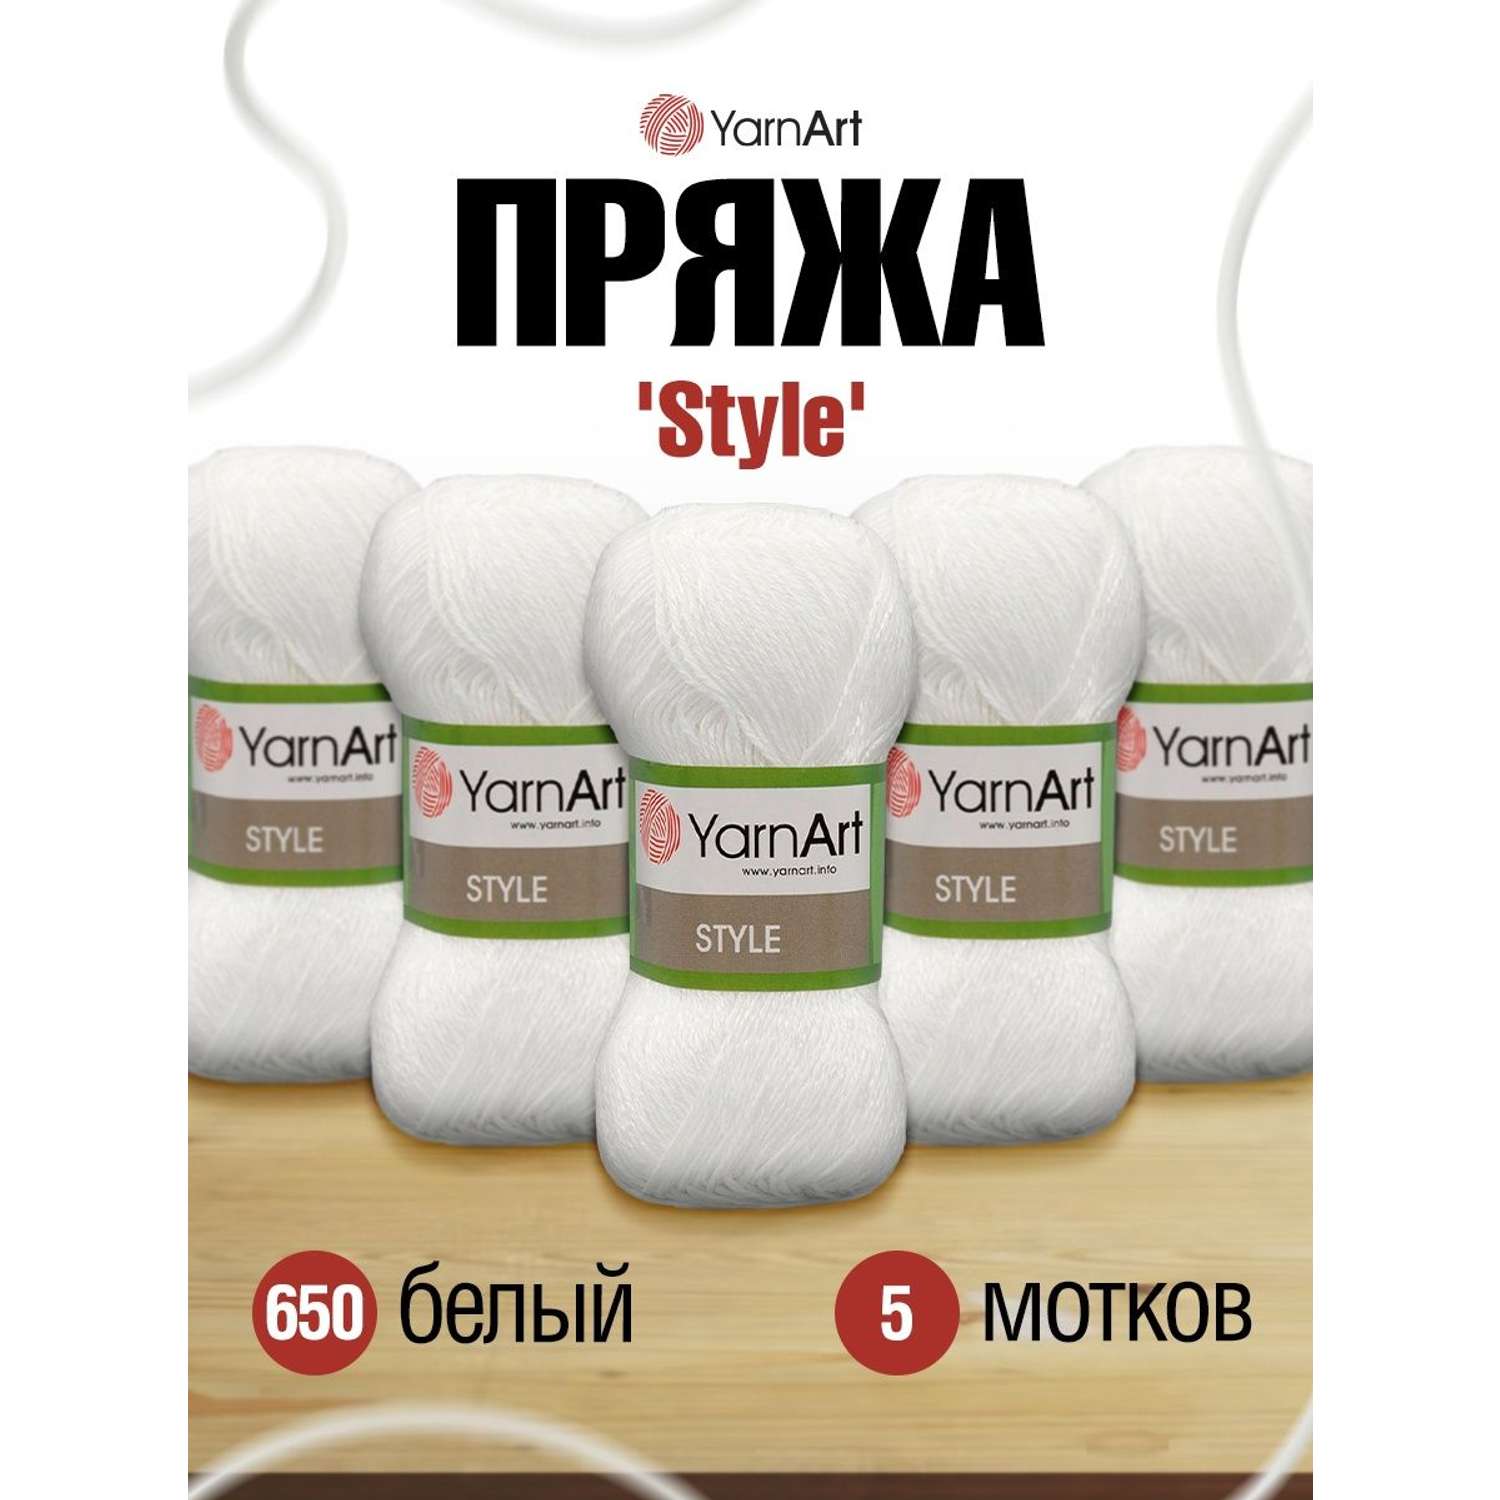 Пряжа YarnArt Style тонкая мягкая 50 г 185 м 650 белый 5 мотков - фото 1